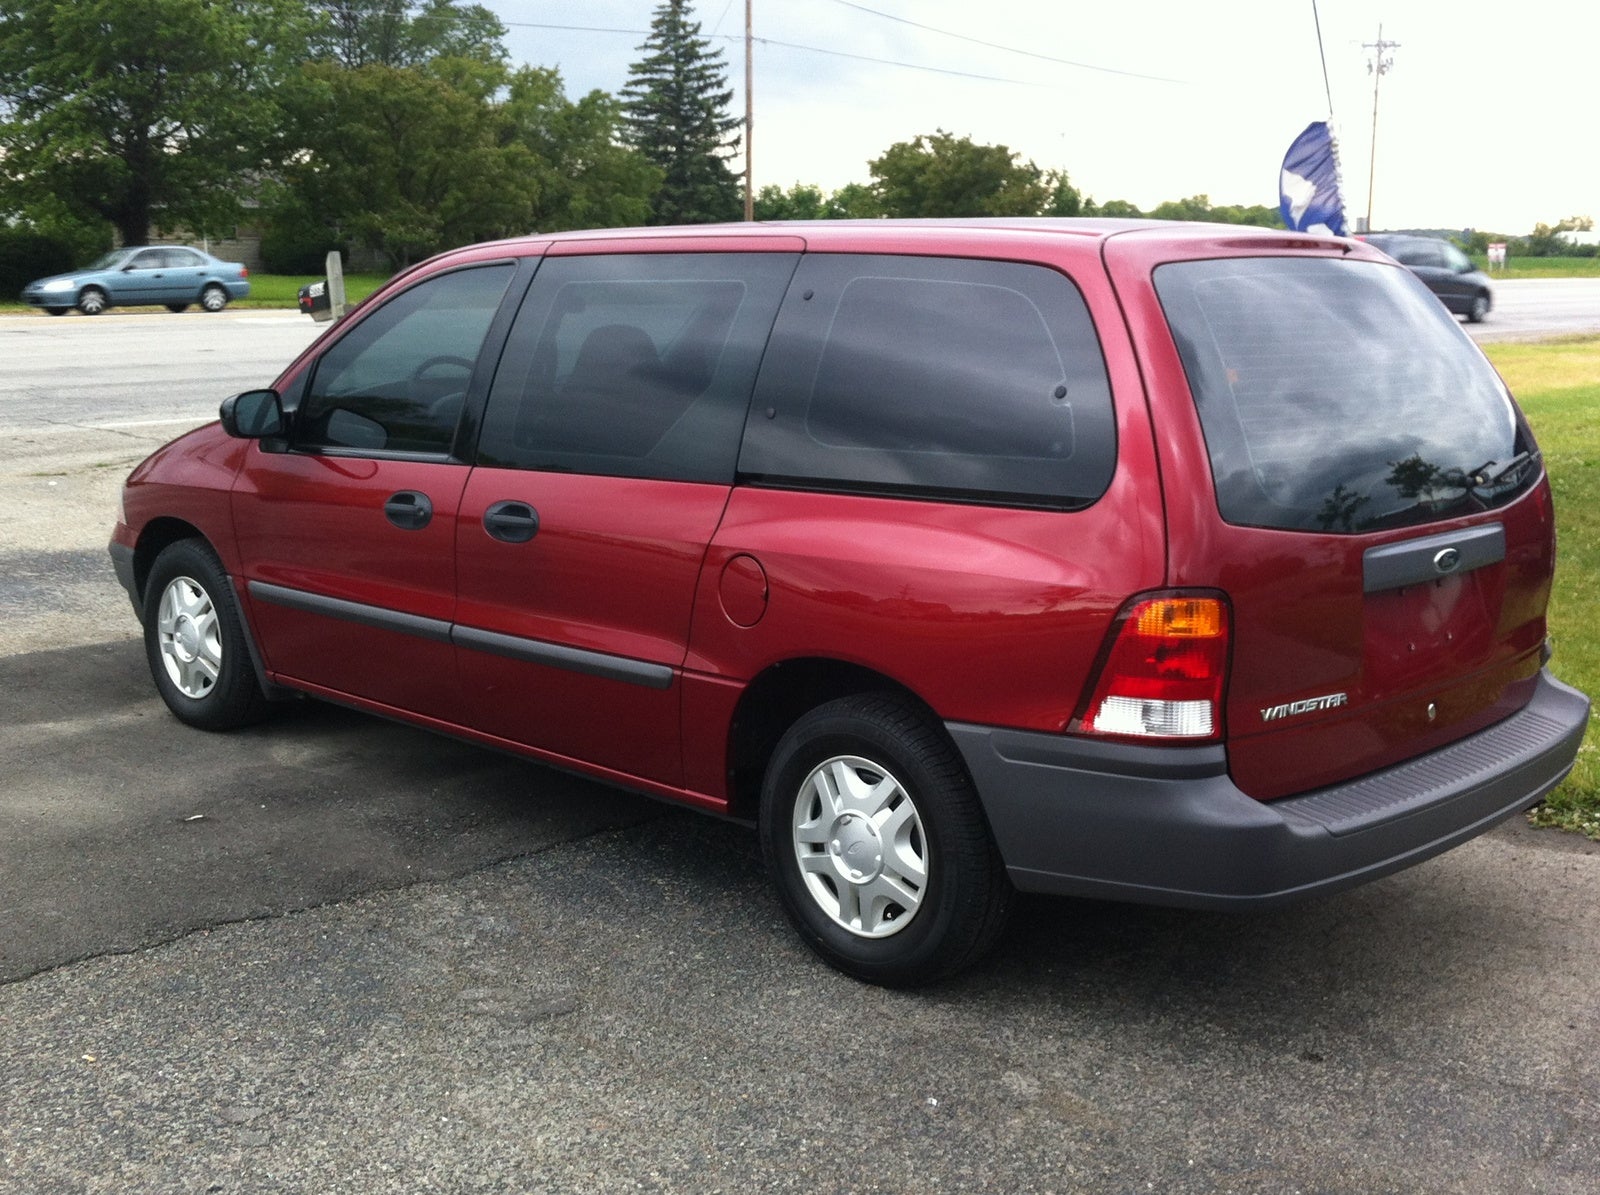 1999 Ford windstar minivan review #5